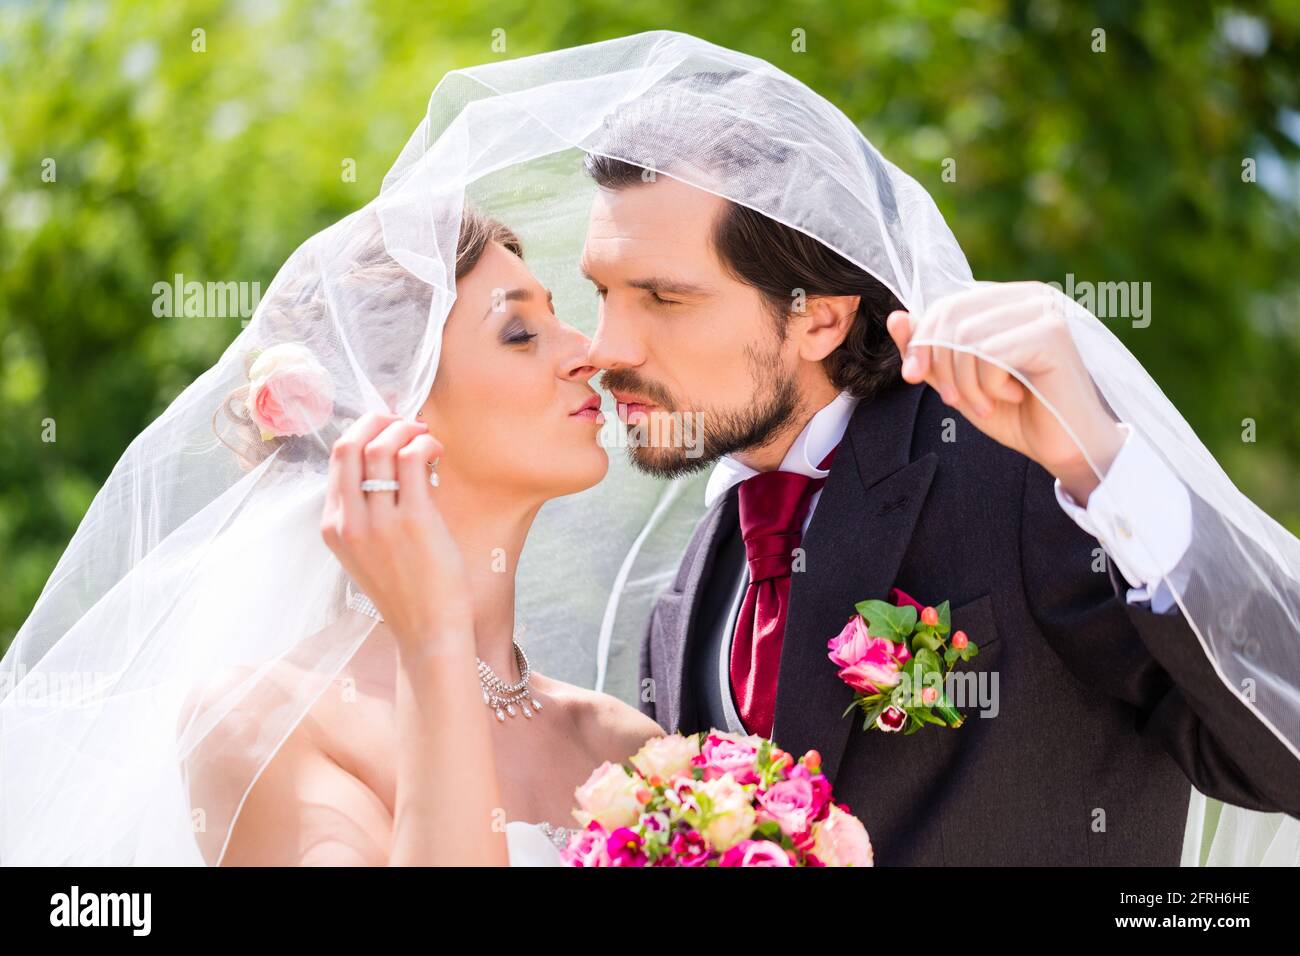 Bridal pair kissing under veil at wedding Stock Photo